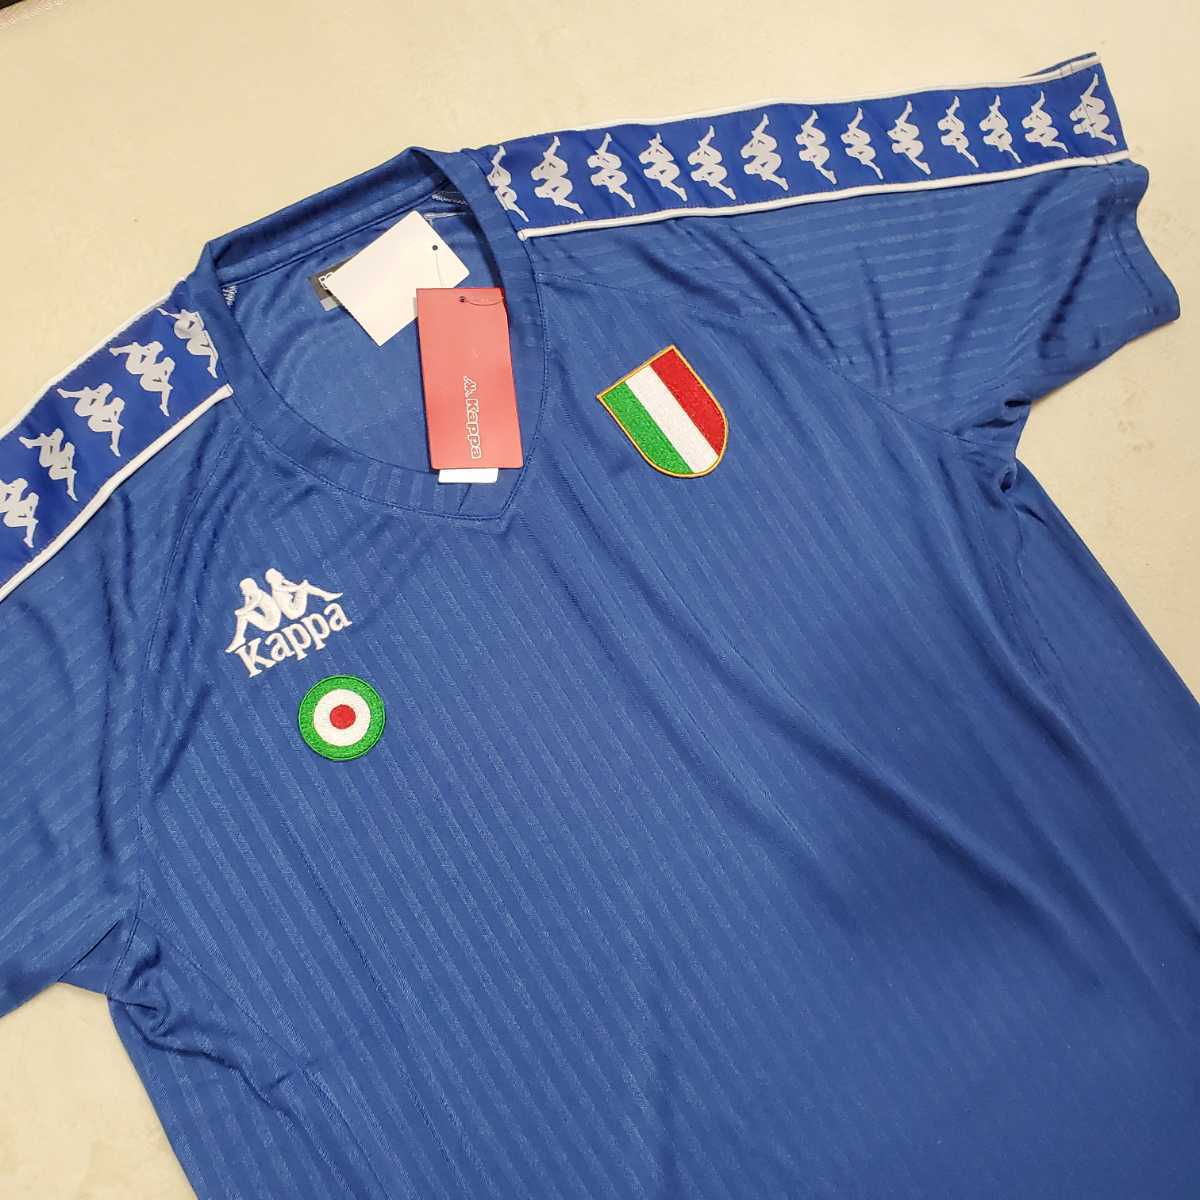 新品未使用 Kappa カッパ Tee Tシャツ イタリア Italy 半袖Tシャツ サッカー L 今季一番